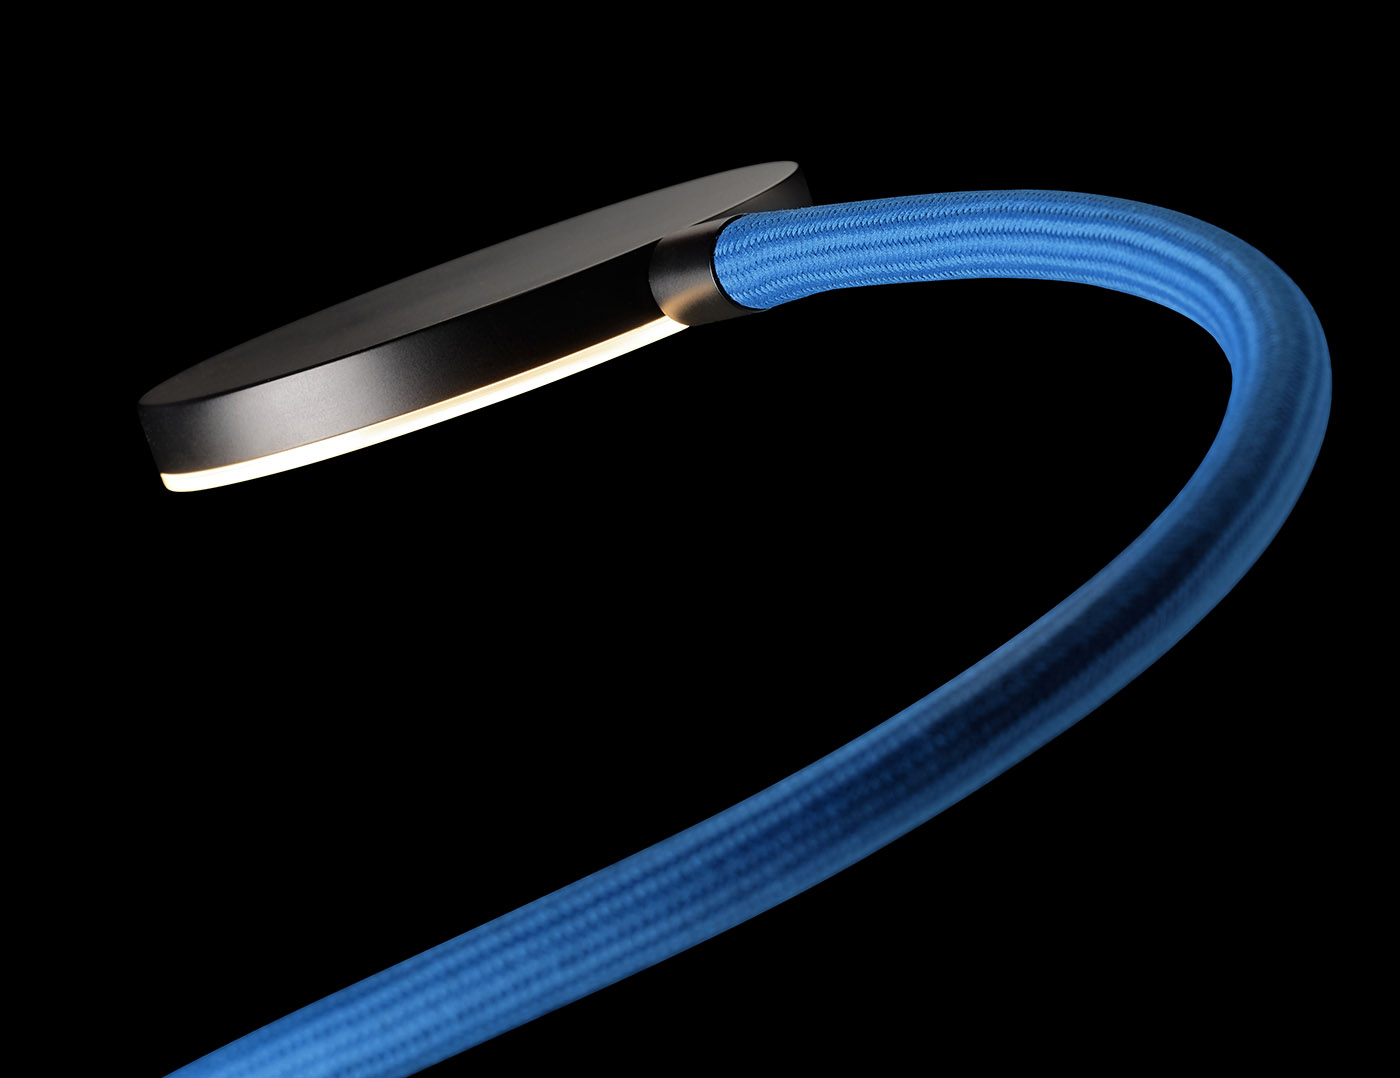 Wandleuchte FLEX W mit Flexarm, High End-LED und Drehdimmer: Detail des Flexarms in blau mit schwarzer Metall-Oberfläche